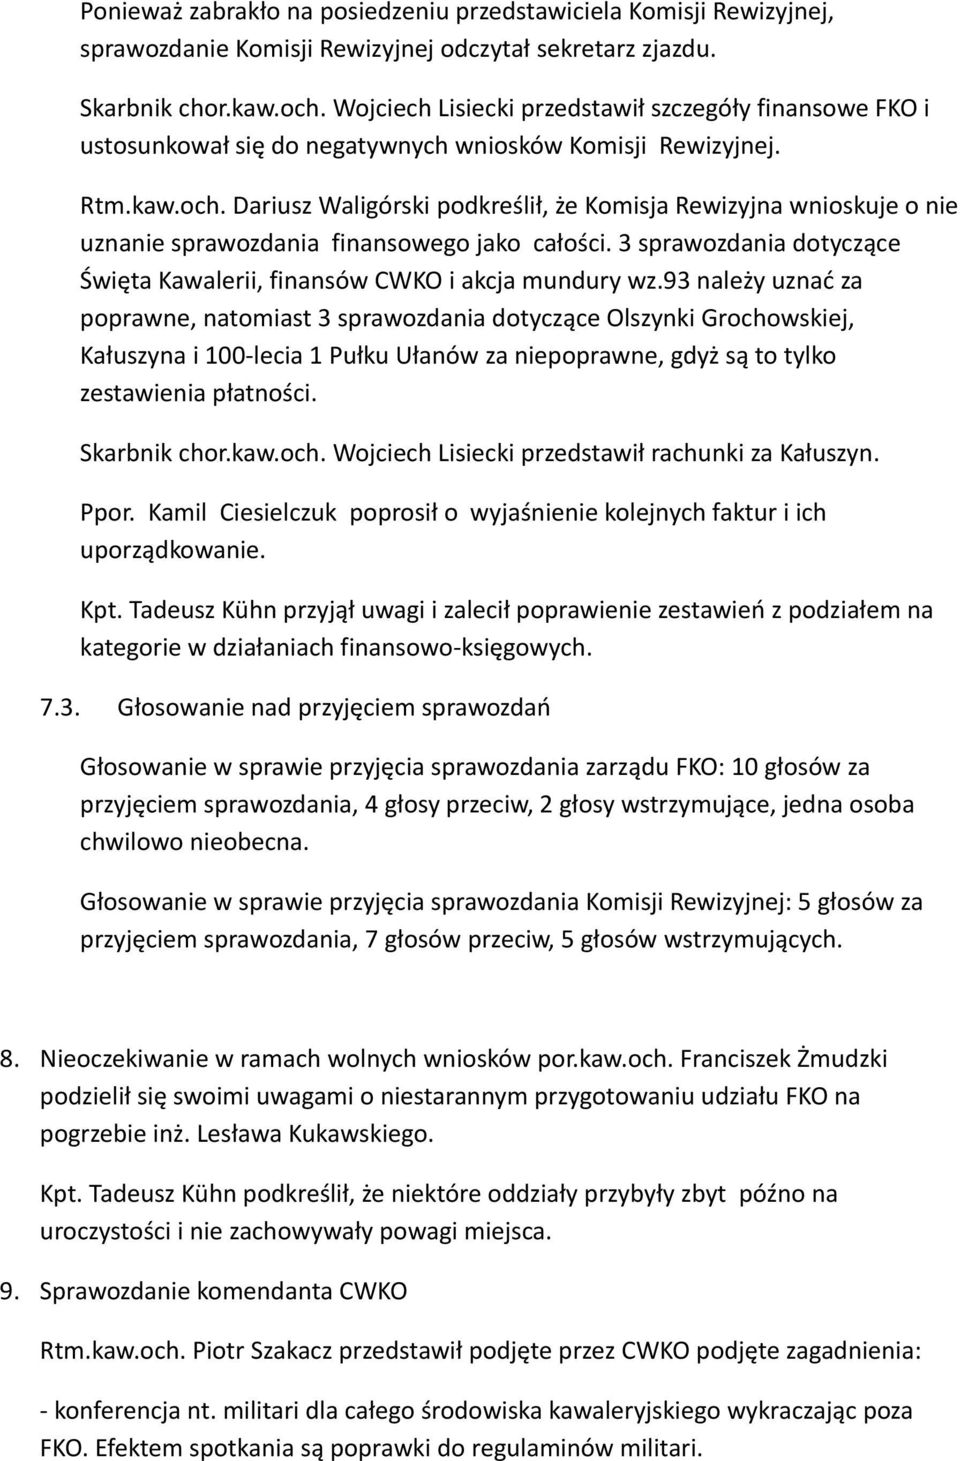 Dariusz Waligórski podkreślił, że Komisja Rewizyjna wnioskuje o nie uznanie sprawozdania finansowego jako całości. 3 sprawozdania dotyczące Święta Kawalerii, finansów CWKO i akcja mundury wz.